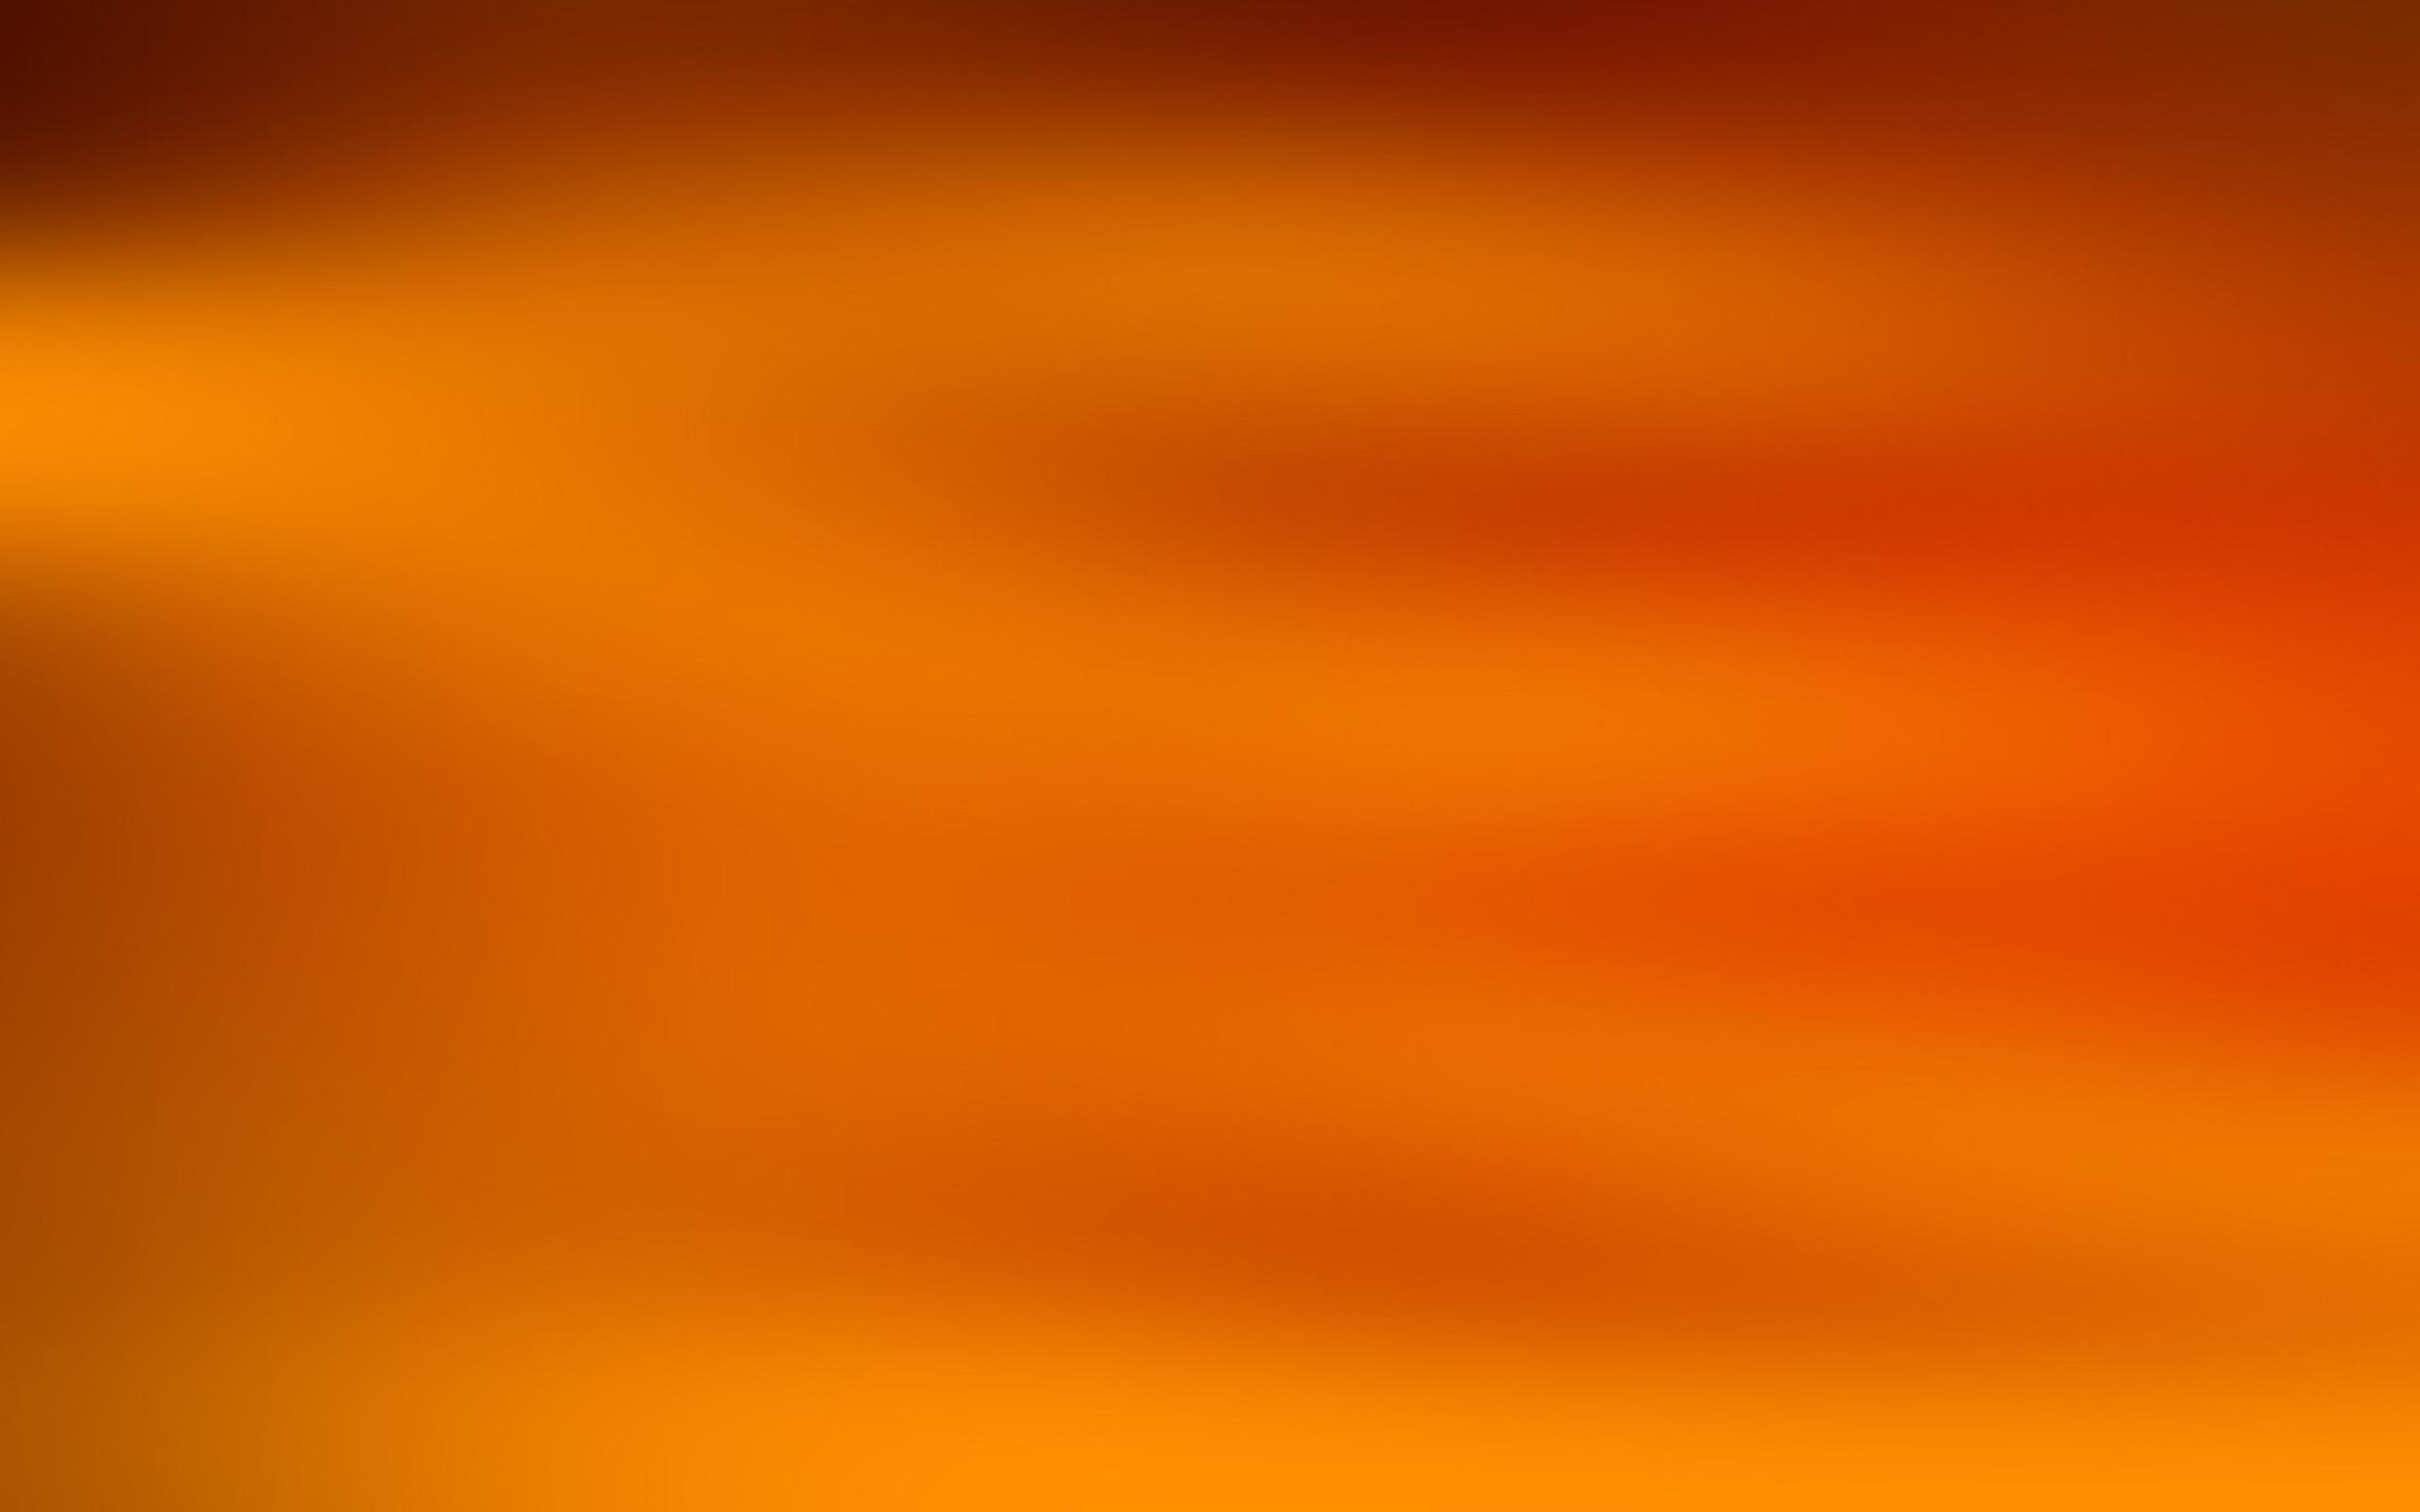 Hình nền màu cam sẽ mang lại cho bạn một mối cảm hứng mới mẻ. Hãy cùng ngắm nhìn những hình nền màu cam tươi sáng và đầy sức sống này và cải thiện tâm trạng cho ngày mới nhé!